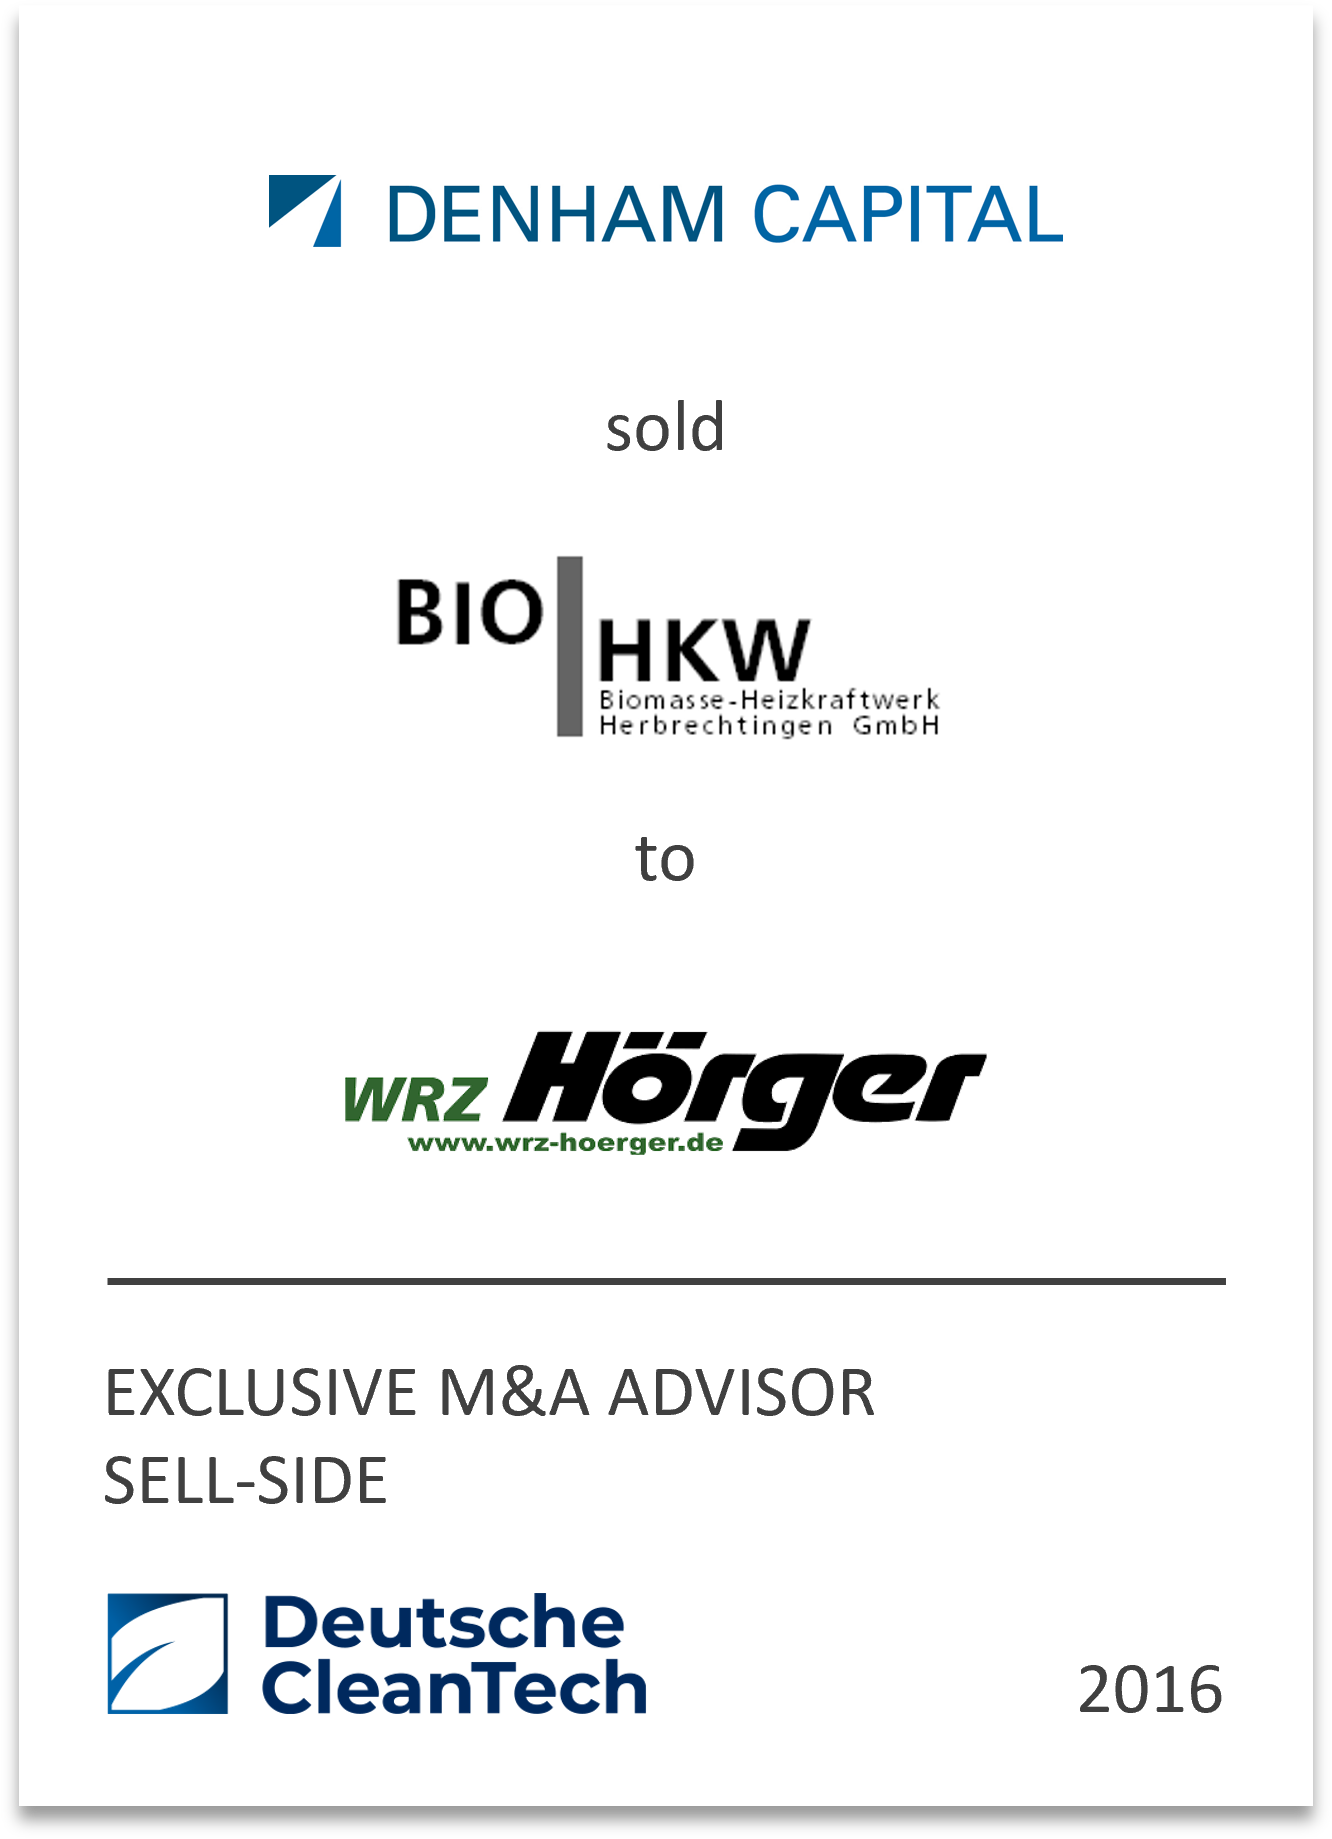 WRZ Hörger GmbH & Co. KG has acquired a biomass power plant Biomasseheizkraftwerk Herbrechtingen GmbH from Denham Capital Management LP